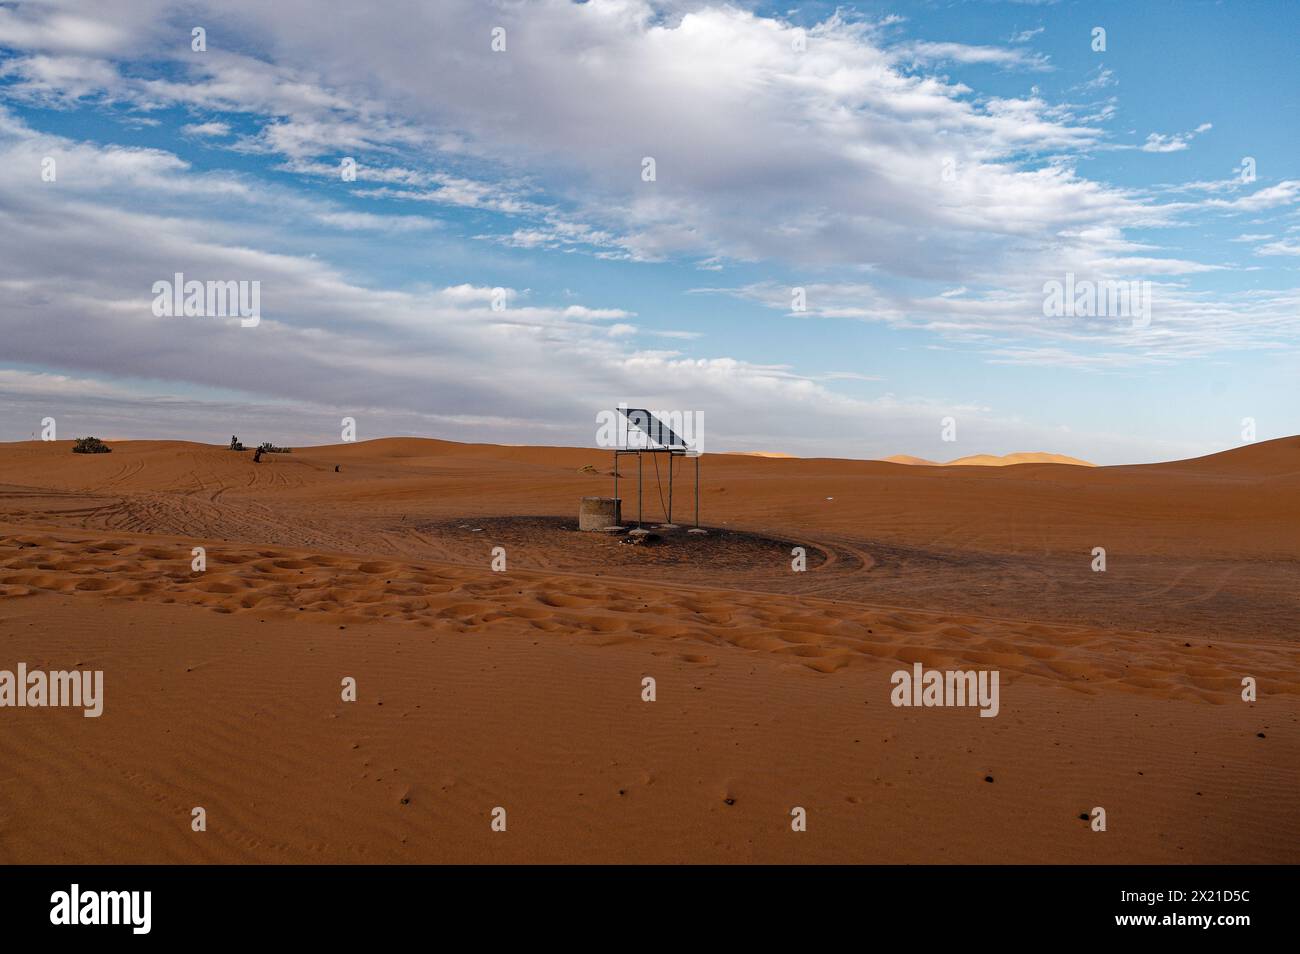 Un pannello solare solitario, arroccato su una sottile struttura in metallo sopra le sabbie desertiche di Merzouga, con tracce di veicoli che intrecciano un motivo circolare sotto di esso. Foto Stock